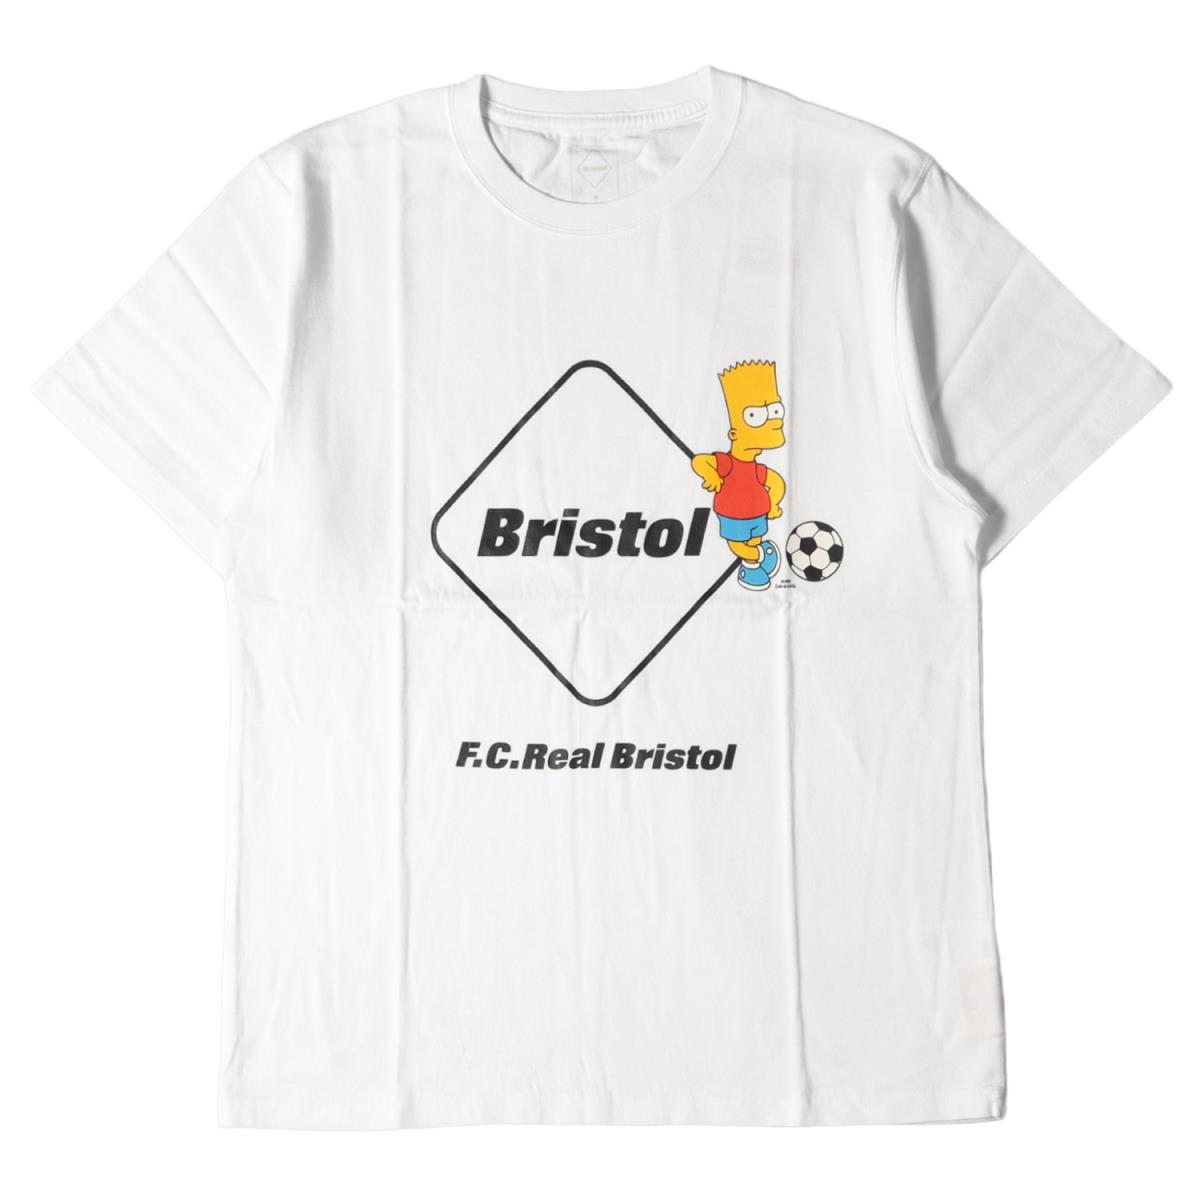 トップス, Tシャツ・カットソー F.C.Real Bristol T THE SIMPSONS T EMBLEM TEE 19SS M FCRB K3400